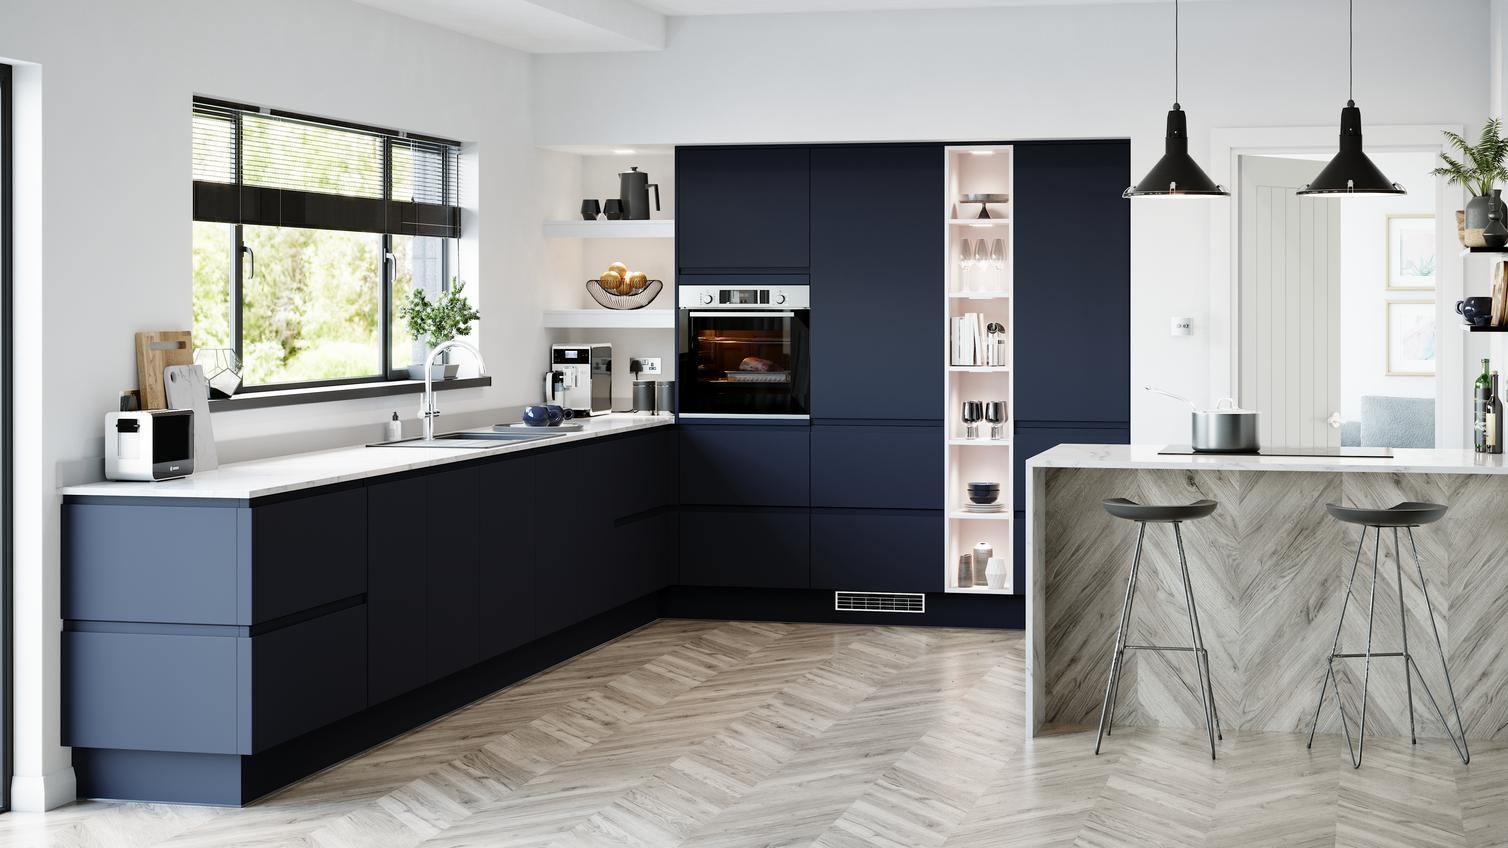 Tủ bếp màu xanh đen hiện đại